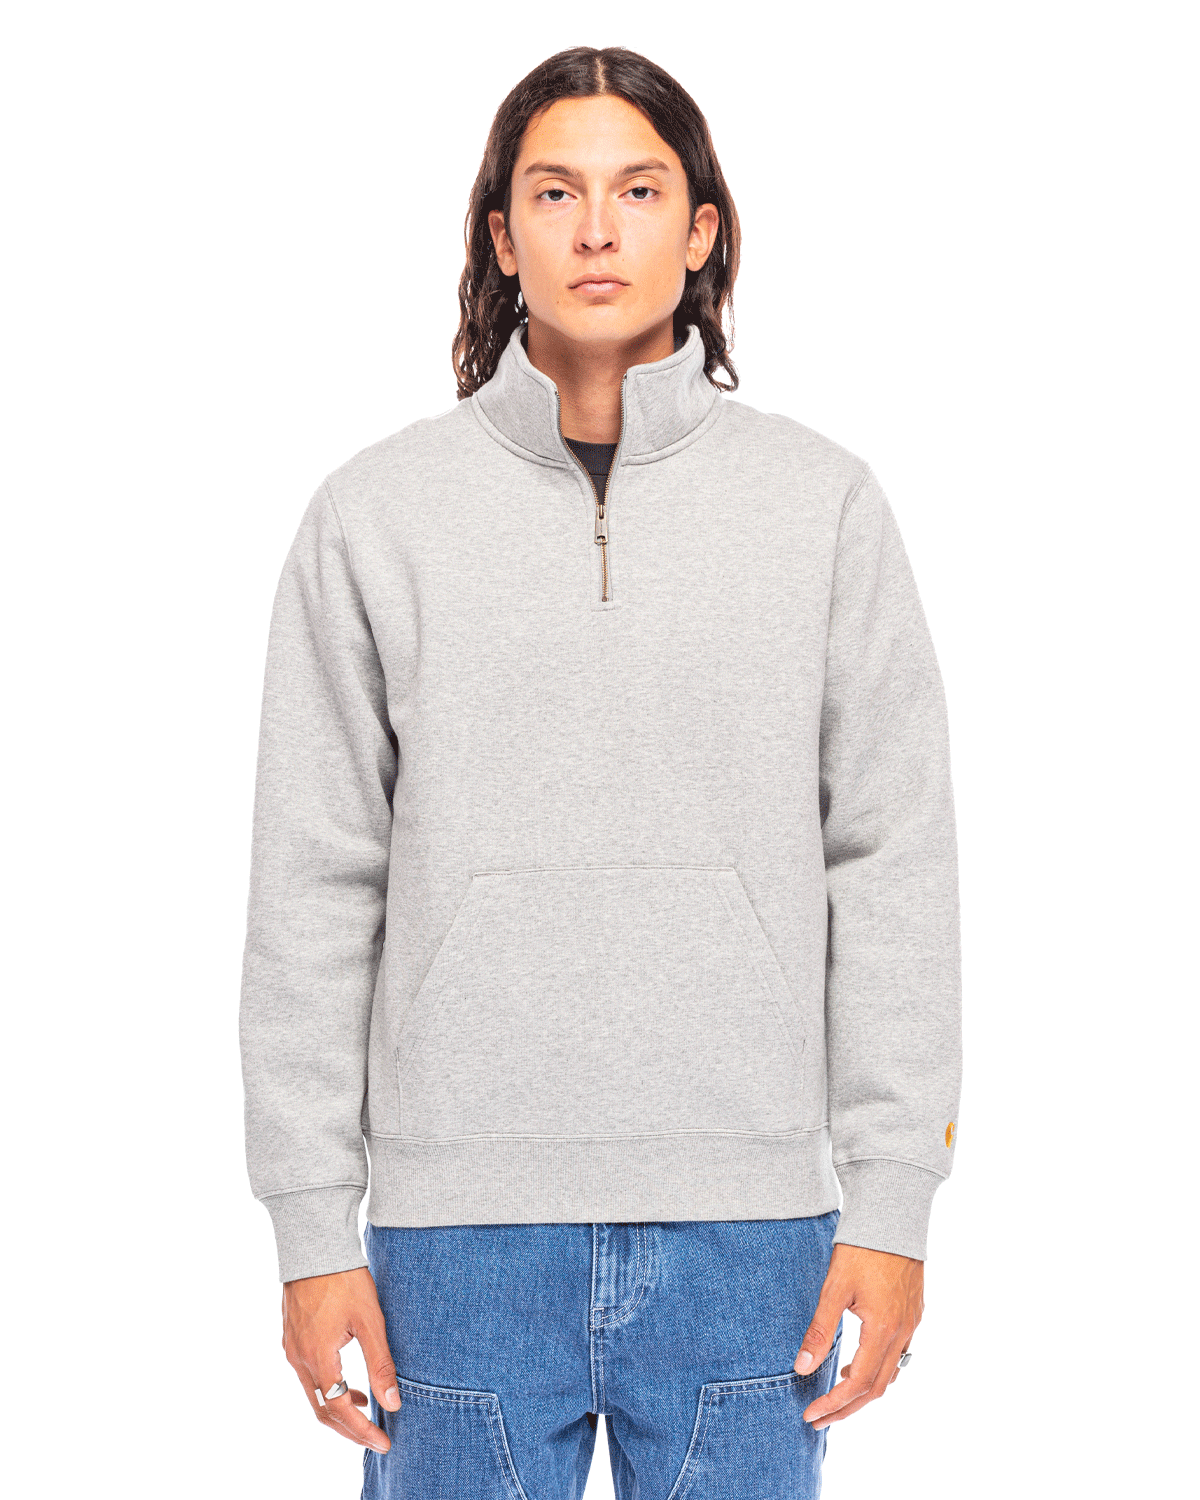 Chase Neck Zip Sweatshirt Grey Heather - Likelihood – LIKELIHOOD